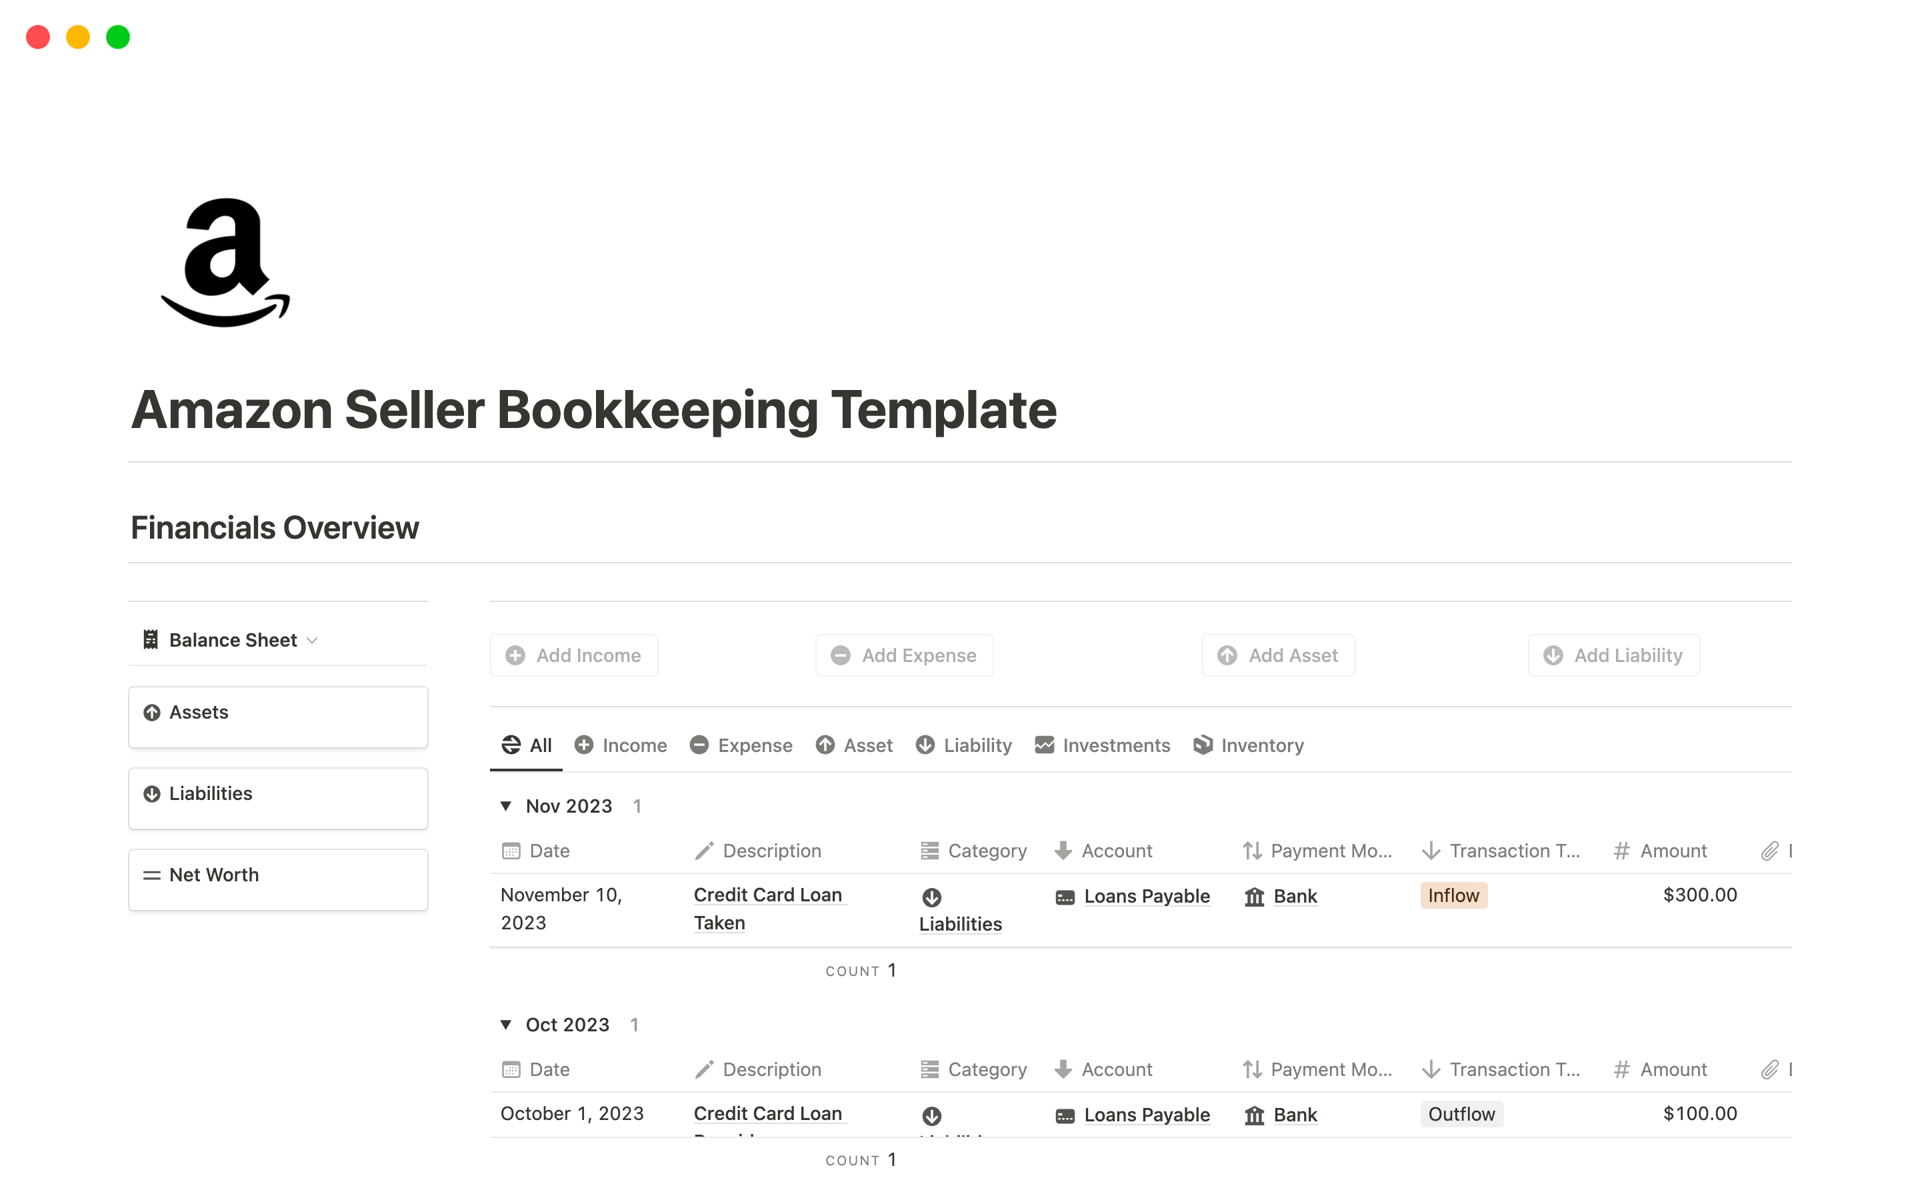 Vista previa de una plantilla para Amazon Seller Bookkeeping